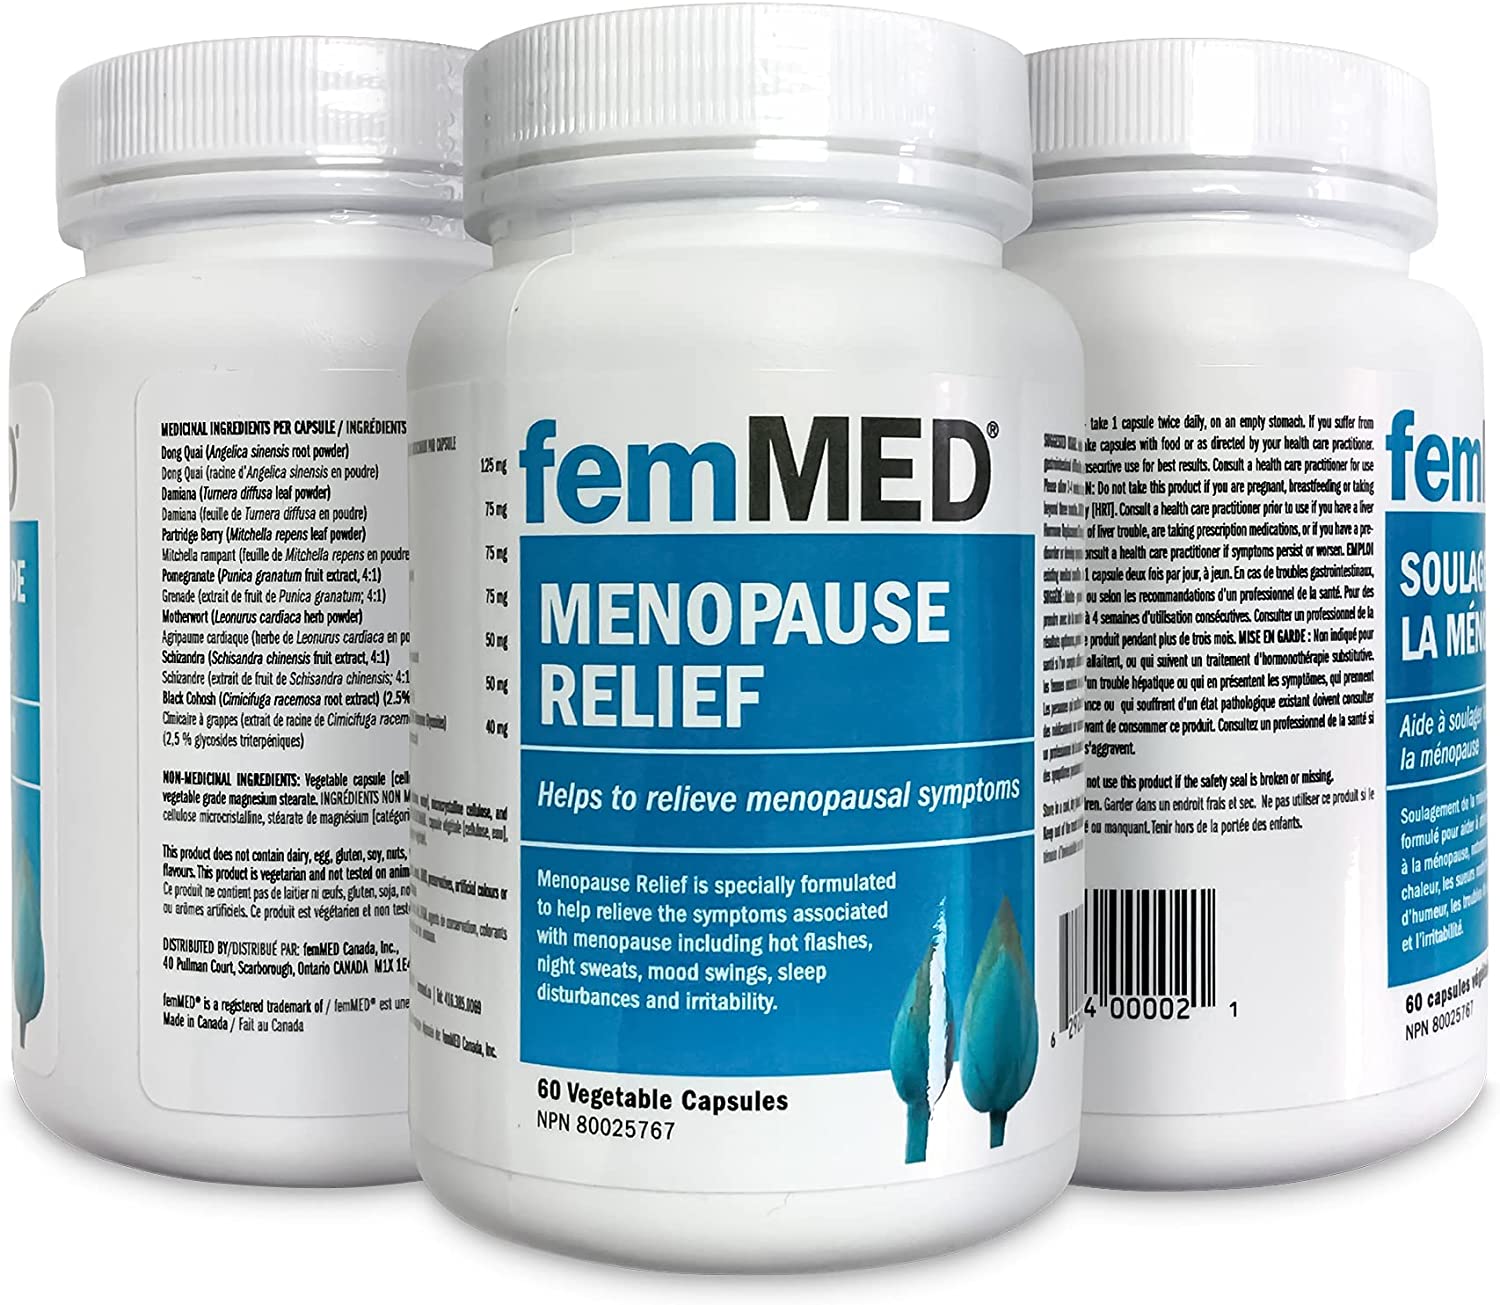 femMED Menopause Relief